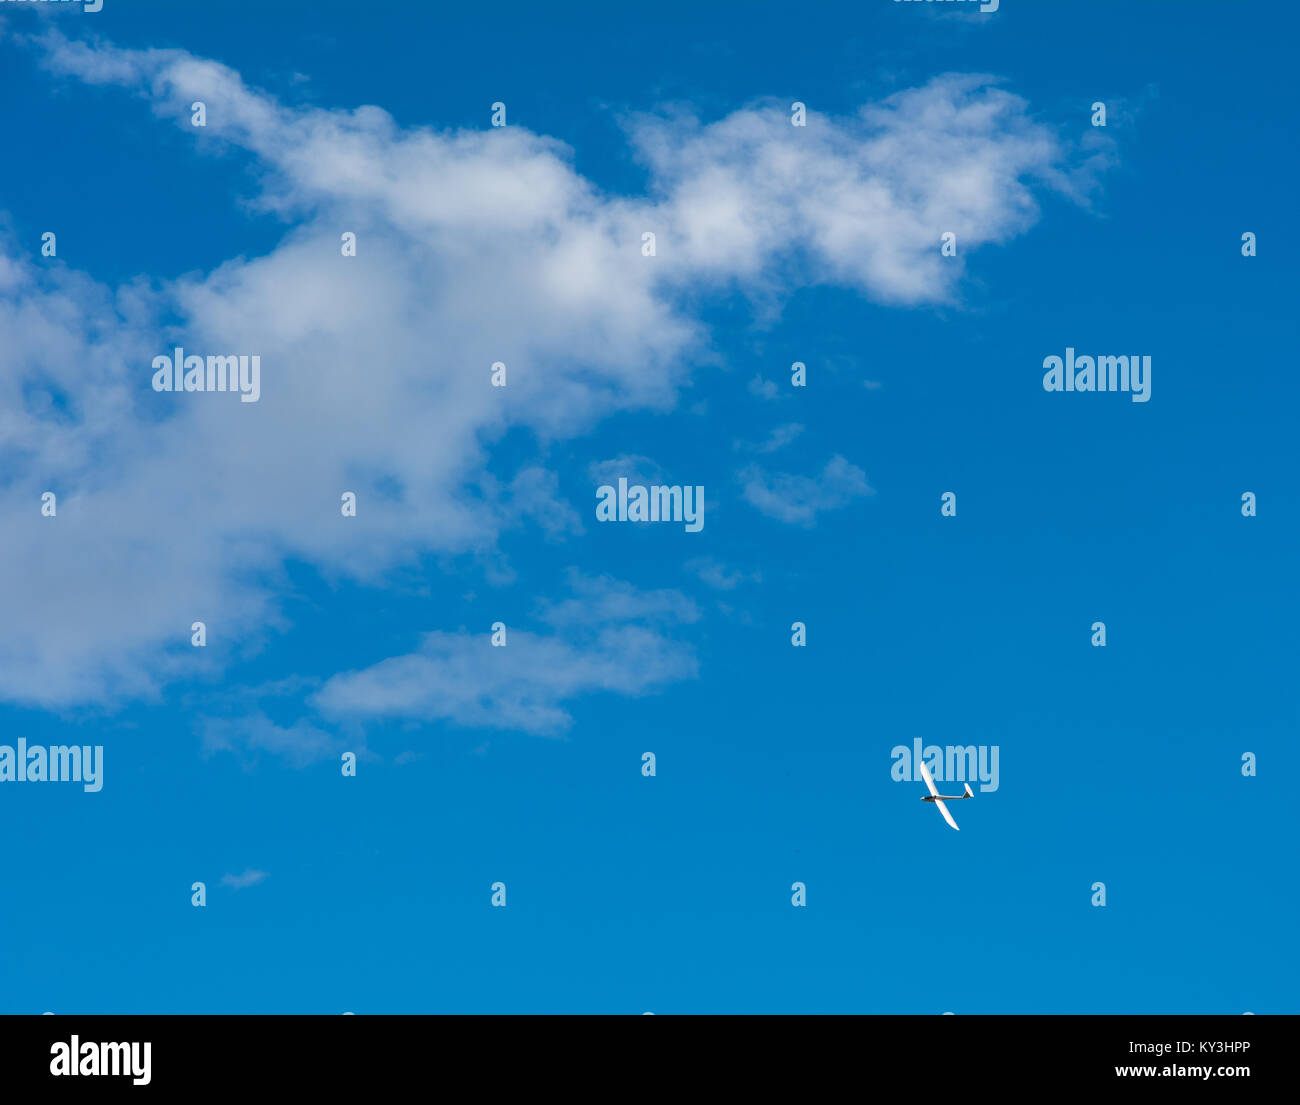 Un parapendio vola nel cielo blu con grandi nuvole bianche. Il parapendio è un piano che non ha il motore Foto Stock